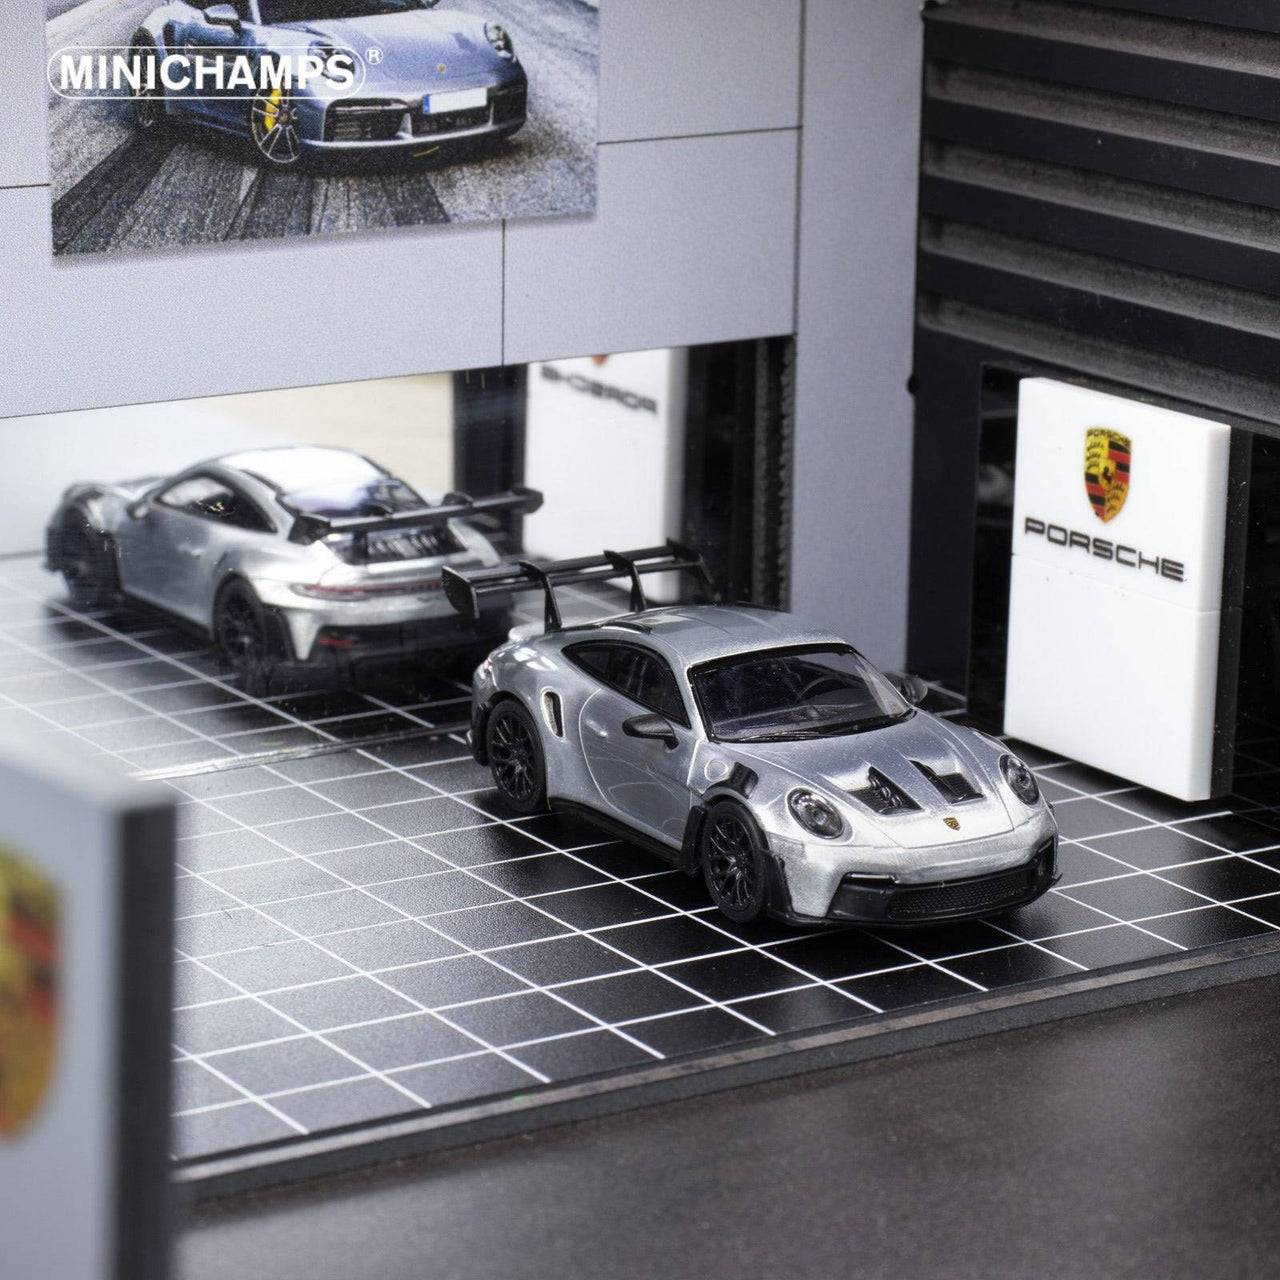 PRE-ORDER Minichamps 1:64 CLDC Exclsuive Magazine VOL2 with Minichamps Porsche 911 GT3 RS, English Version